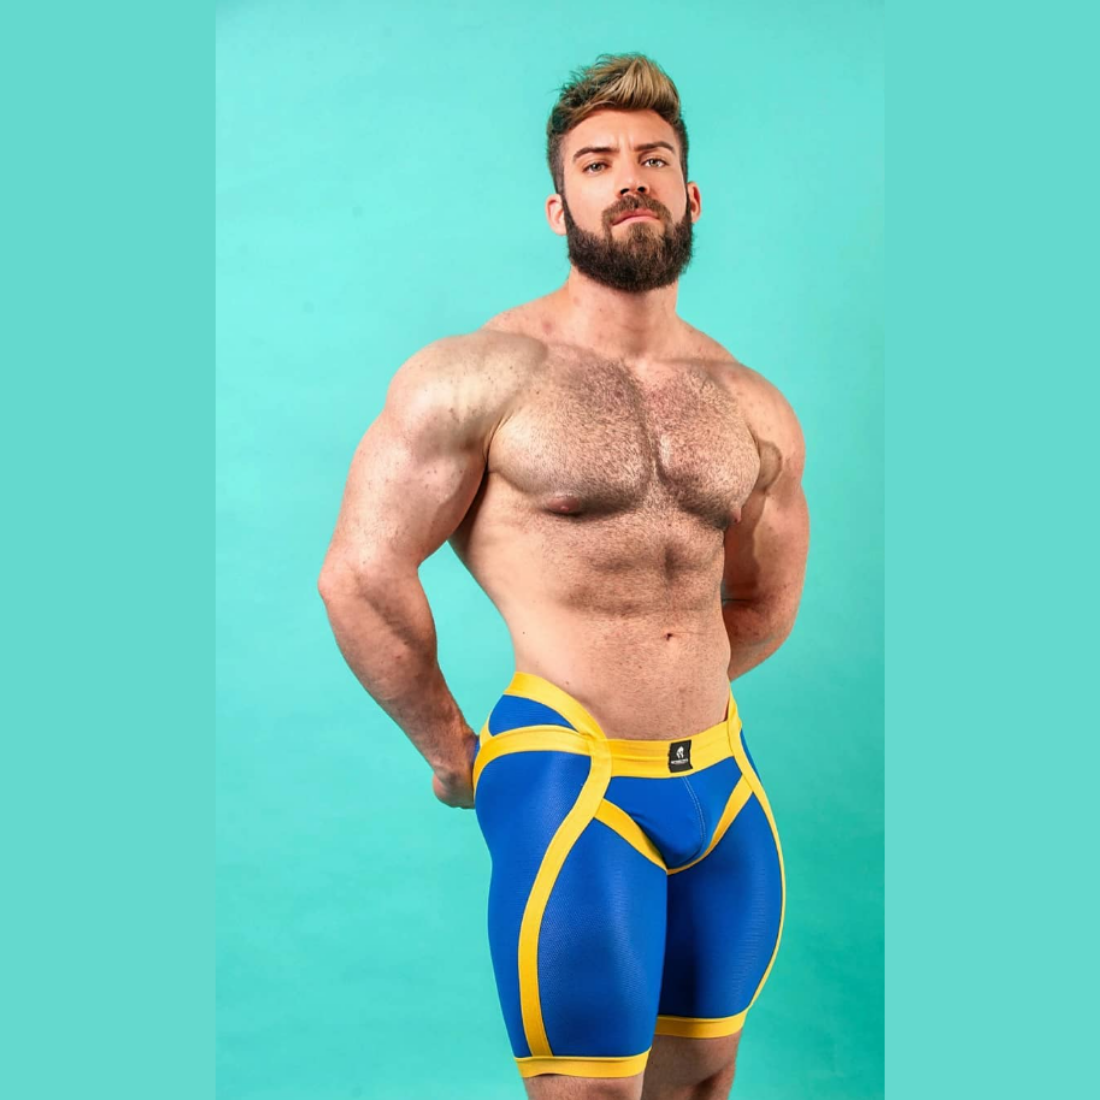 Unieke blauwe short met verlaagde tailleband aan de voorzijde en gele elastische banden, ontworpen door het Italiaanse modehuis Sparta’s Harness en te koop bij Flavourez.